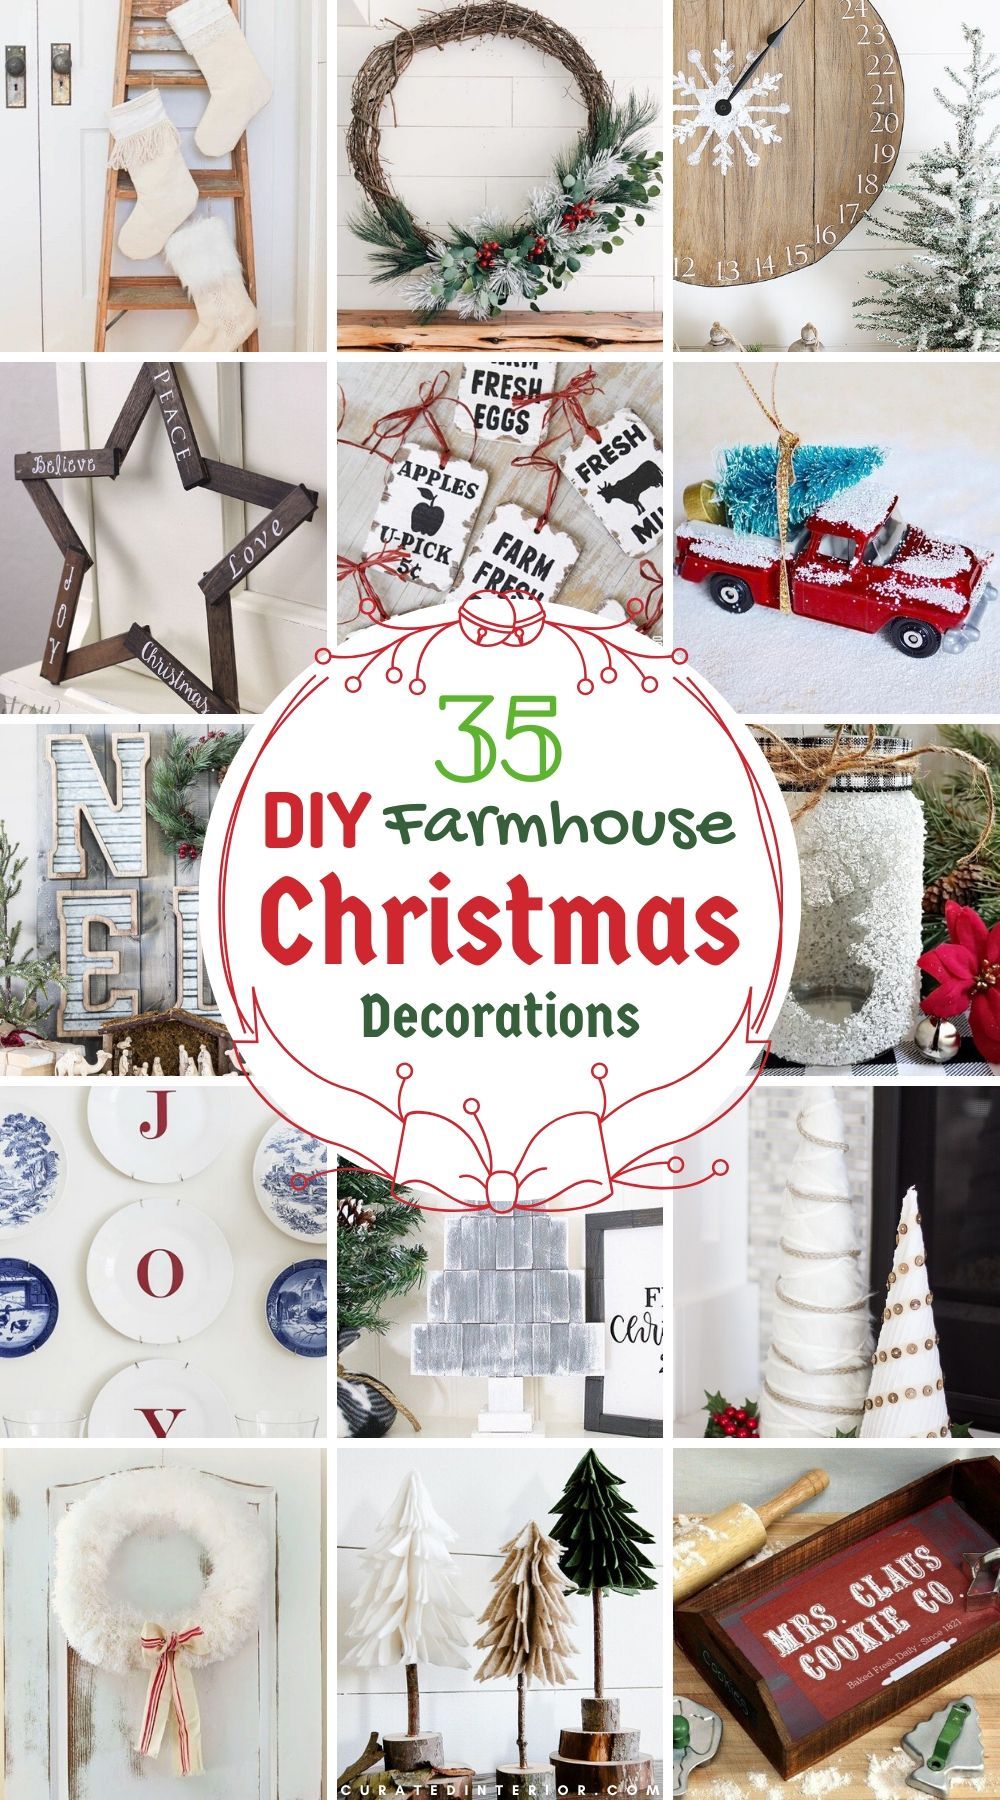 35 Diy Farmhouse Christmas Decorations